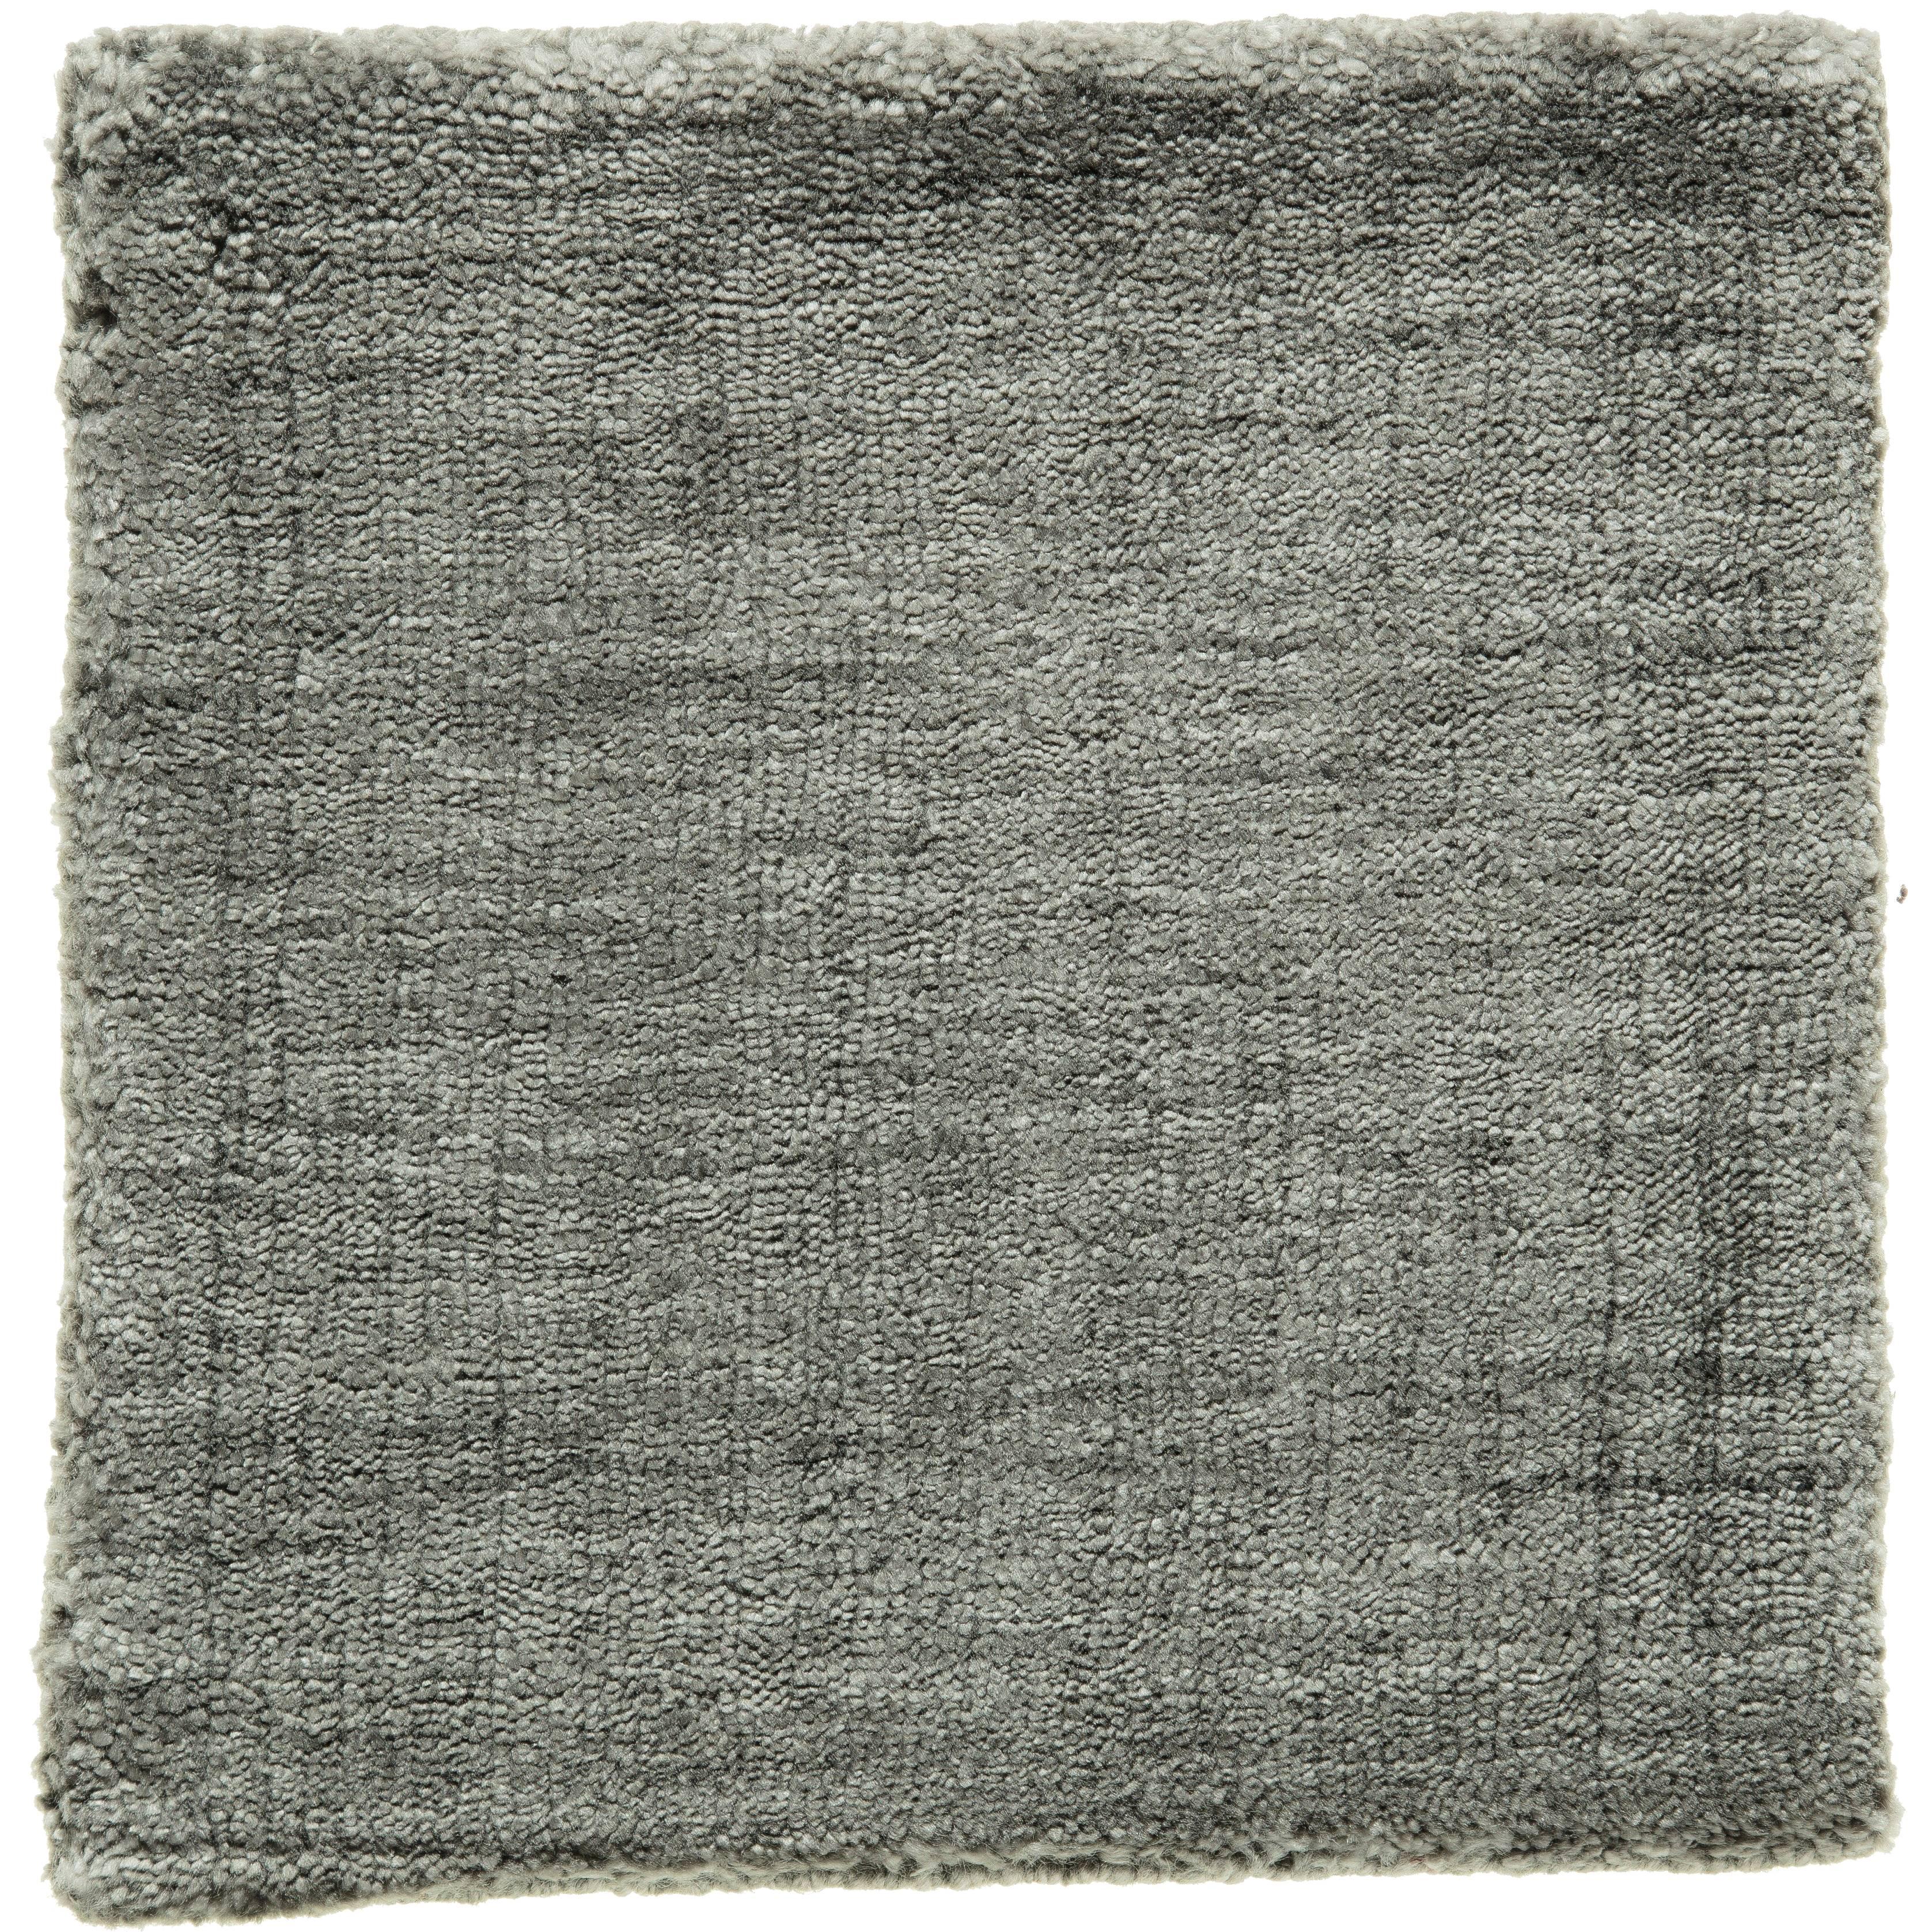 Neutraler grauer handgewebter Bambus-Seide-Teppich in jeder maßgefertigten Größe